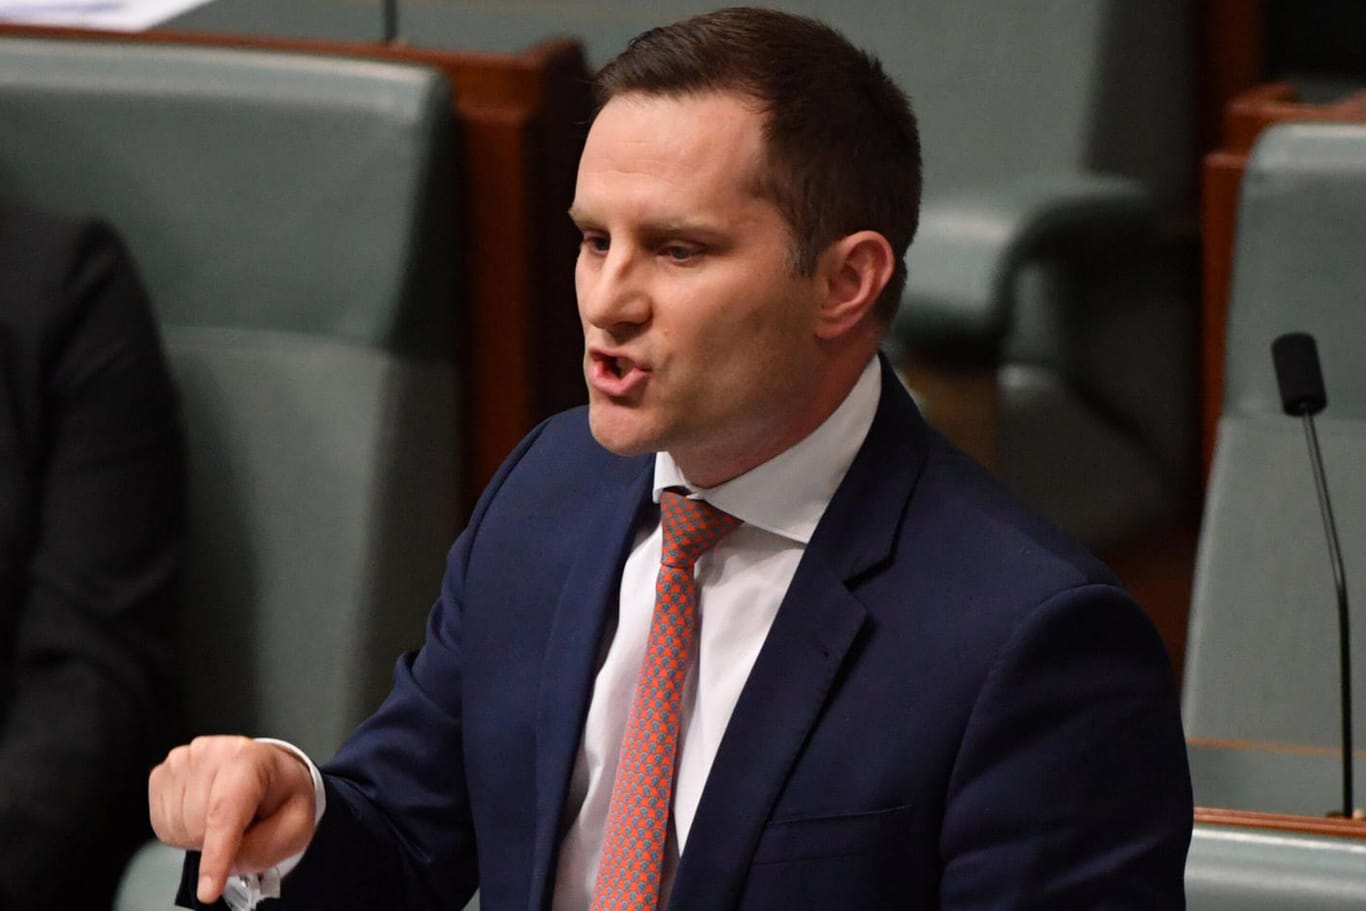 Alex Hawke: Der Australier ist seit Ende 2020 Minister für Einwanderung und Staatsbürgerschaften.